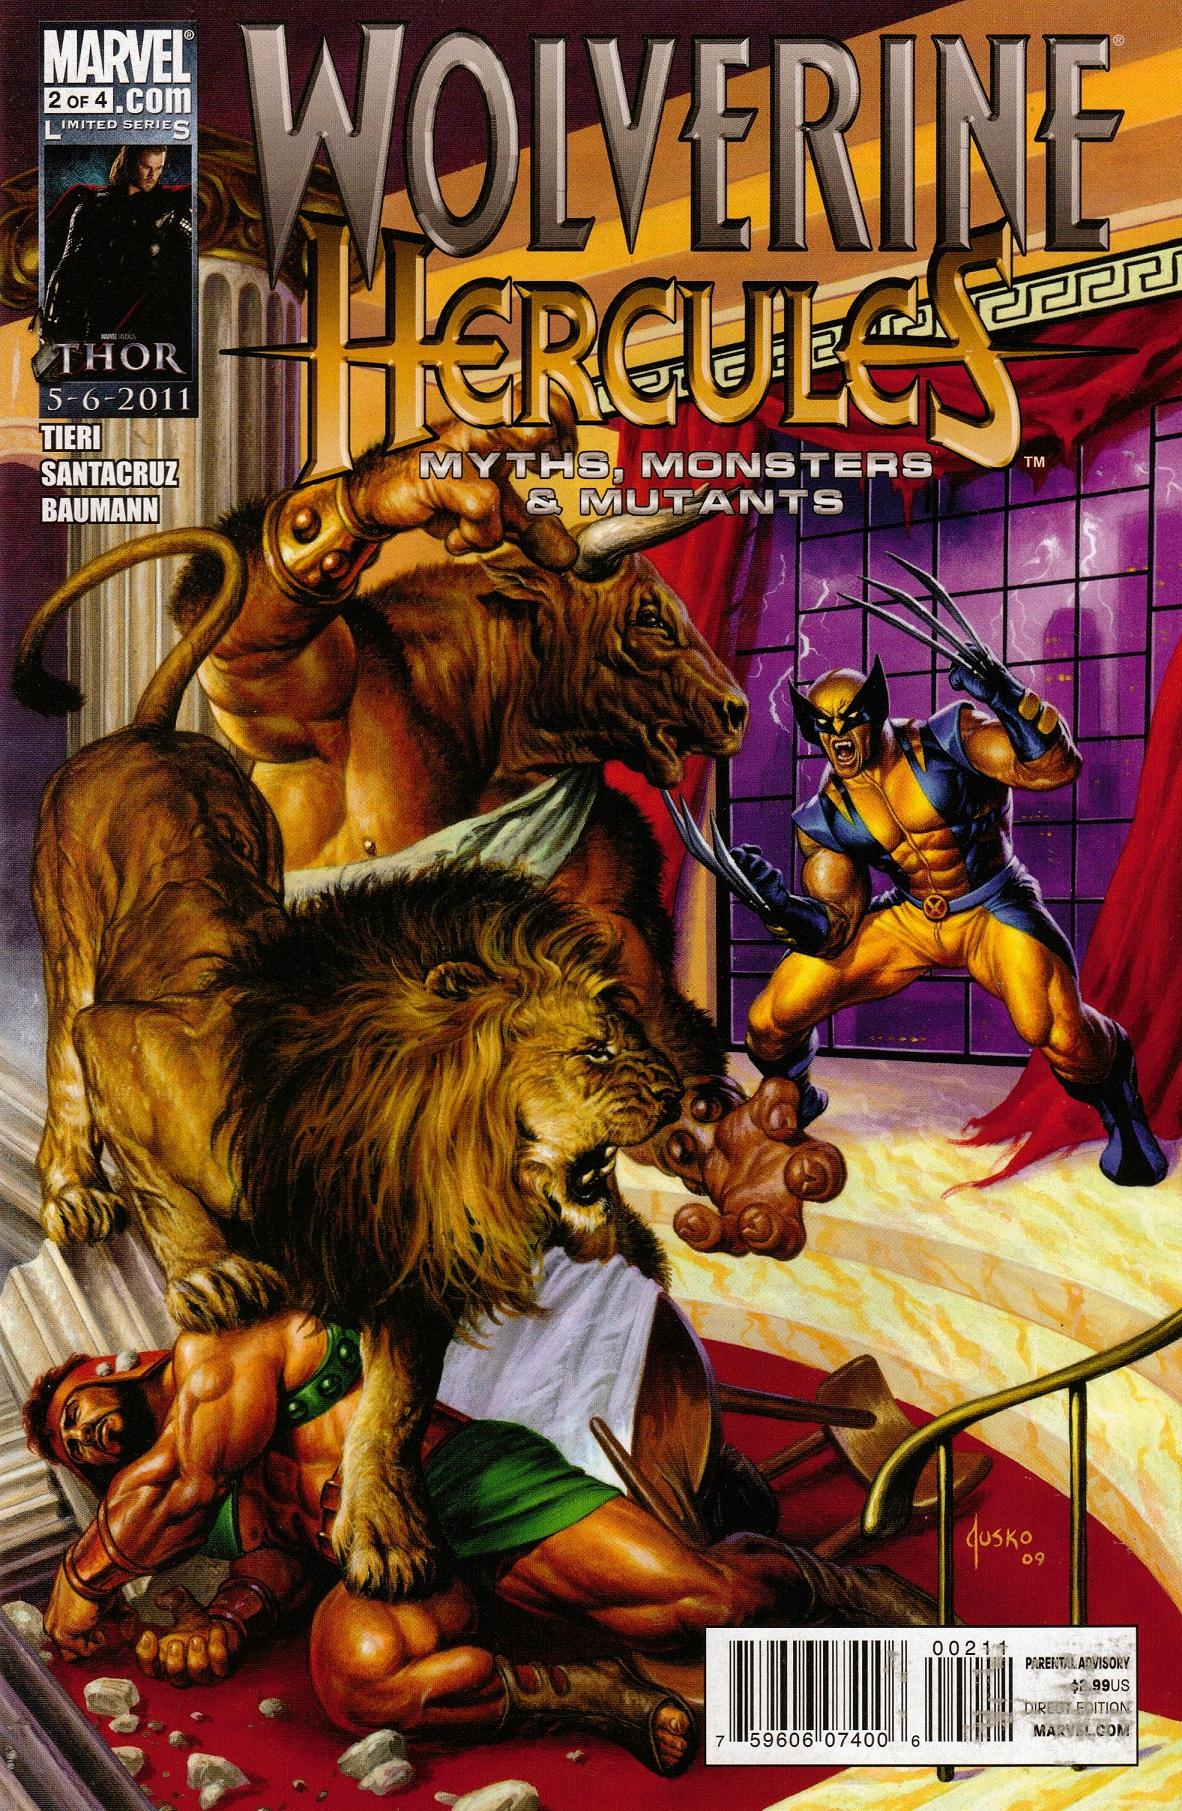 Wolverine/Hercules: Myths, Monsters & Mutants Vol. 1 #2